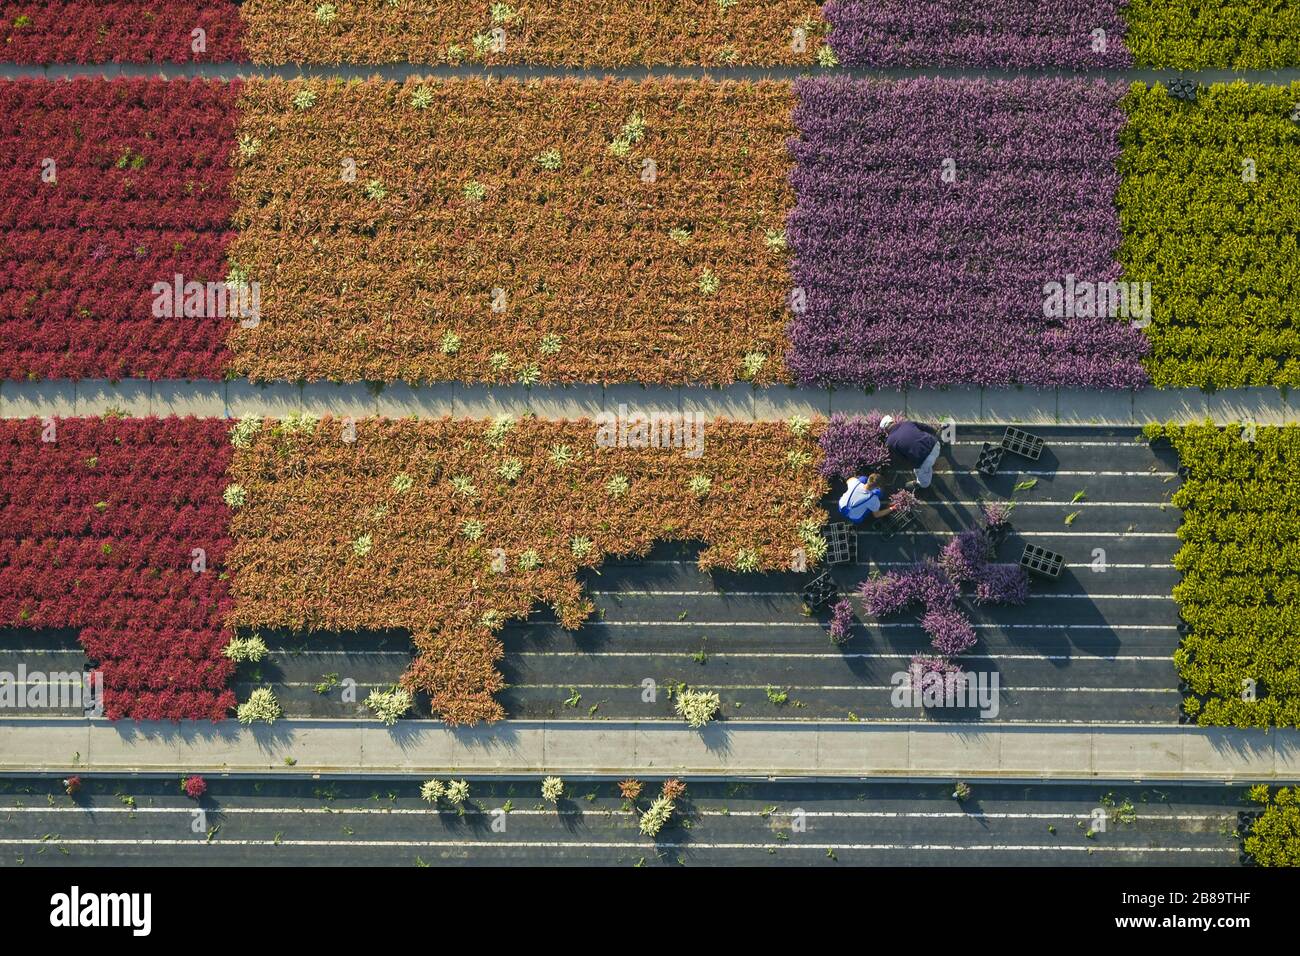 Commune Heather, Ling, Heather (Calluna vulgaris), rangées de fleurs colorées, champs dans une plante ornementale opérant à Schermbeck, 30.09.2013, vue aérienne, Allemagne, Rhénanie-du-Nord-Westphalie, région de la Ruhr, Schermbeck Banque D'Images